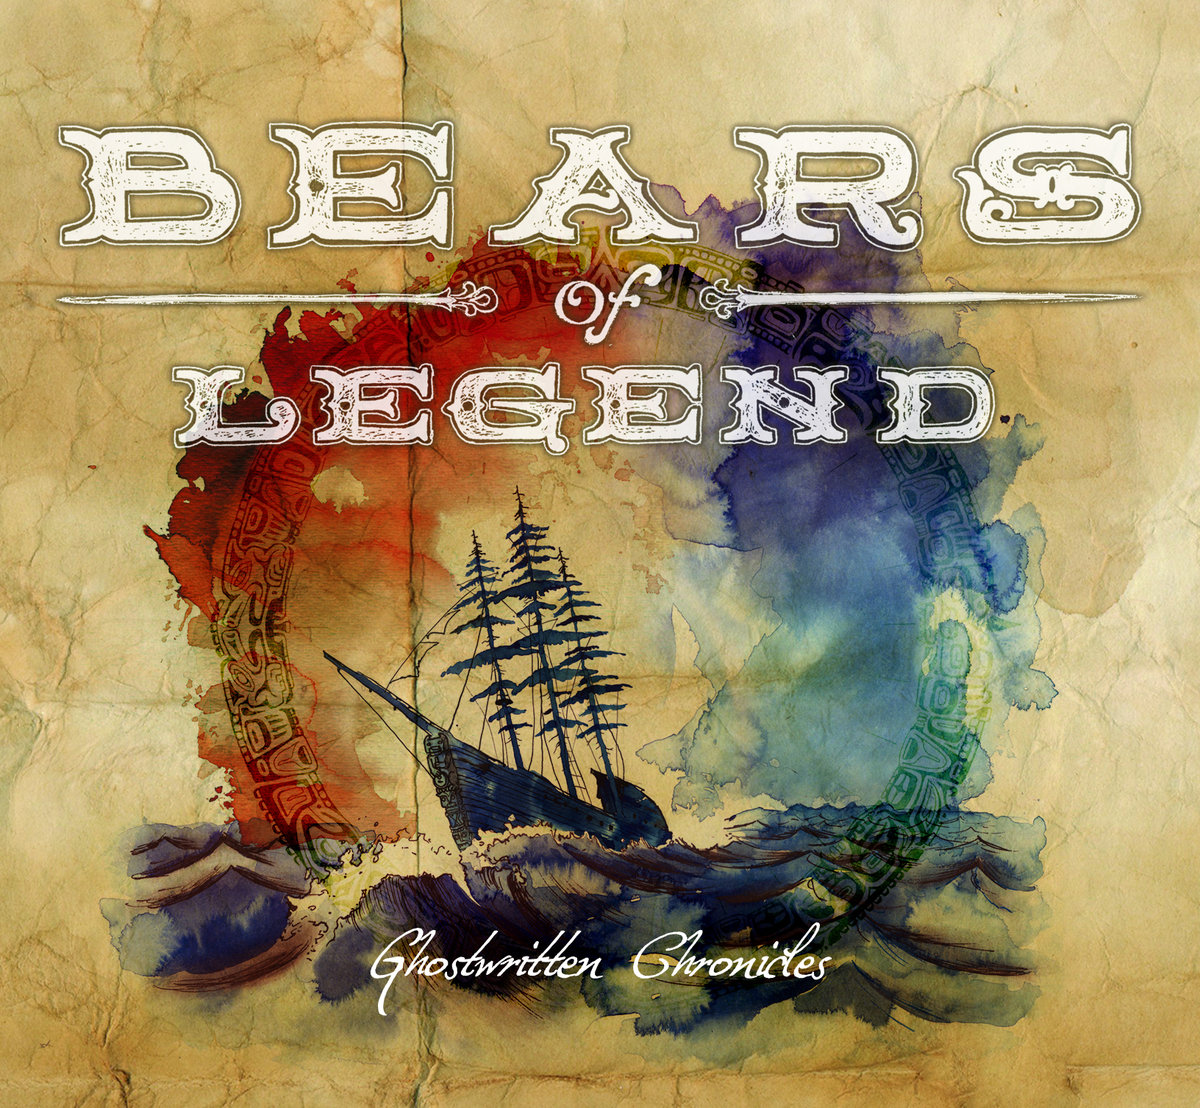 Bears of legend - Ghostwritter Chronicles - pochette